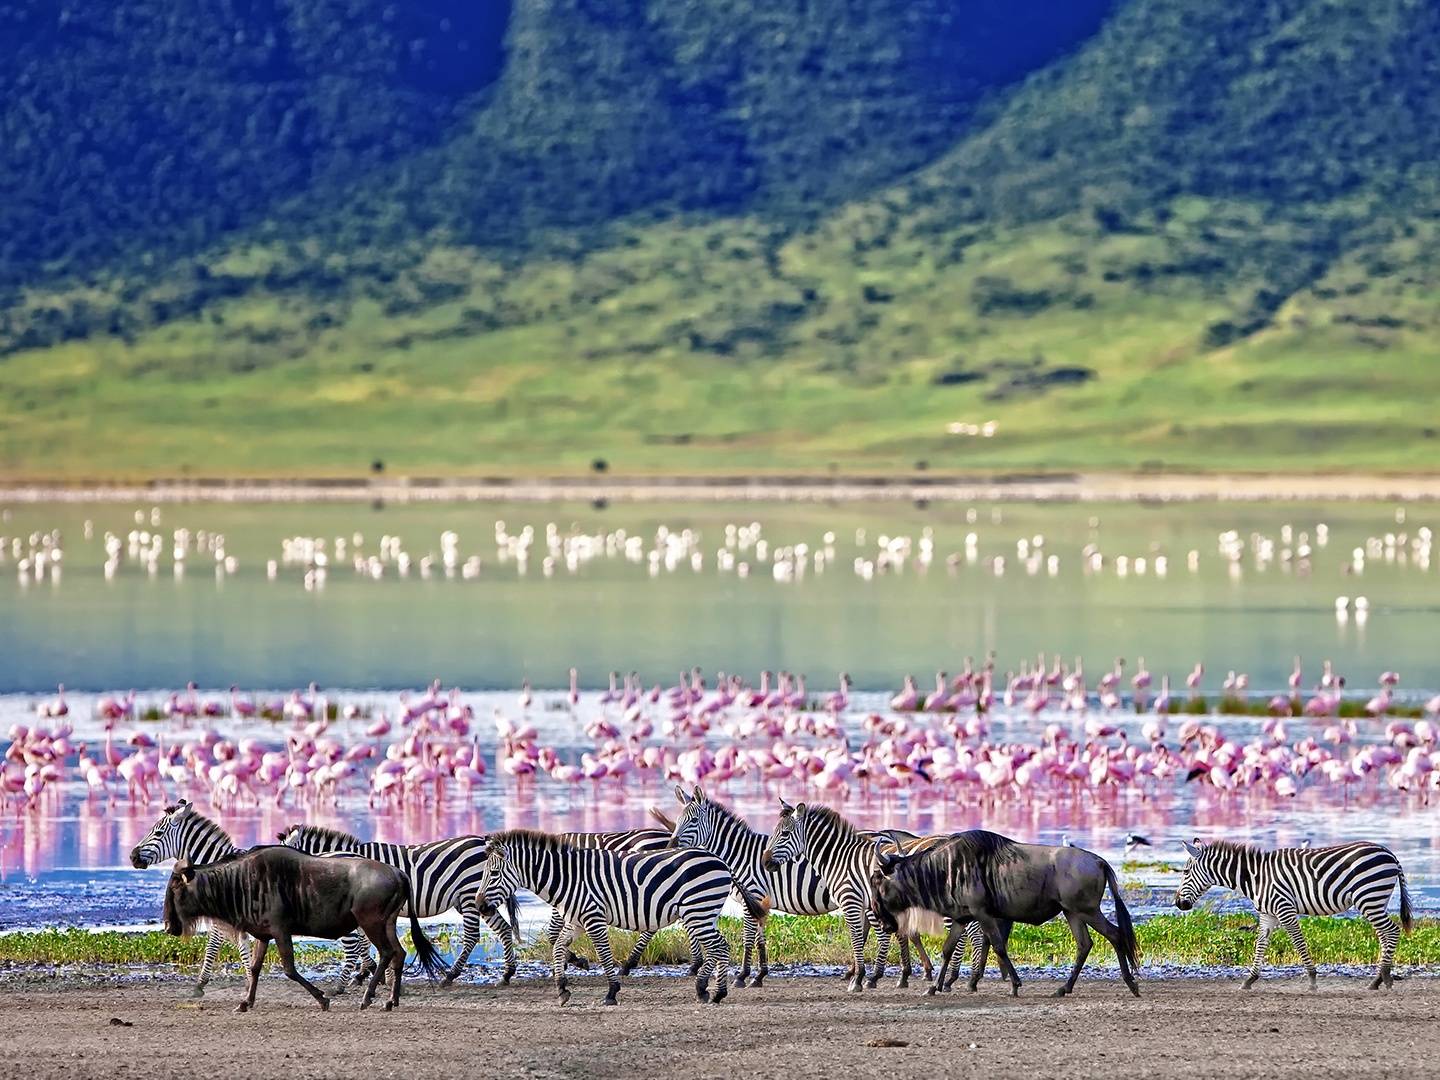 Serengeti National Park – Ngorongoro